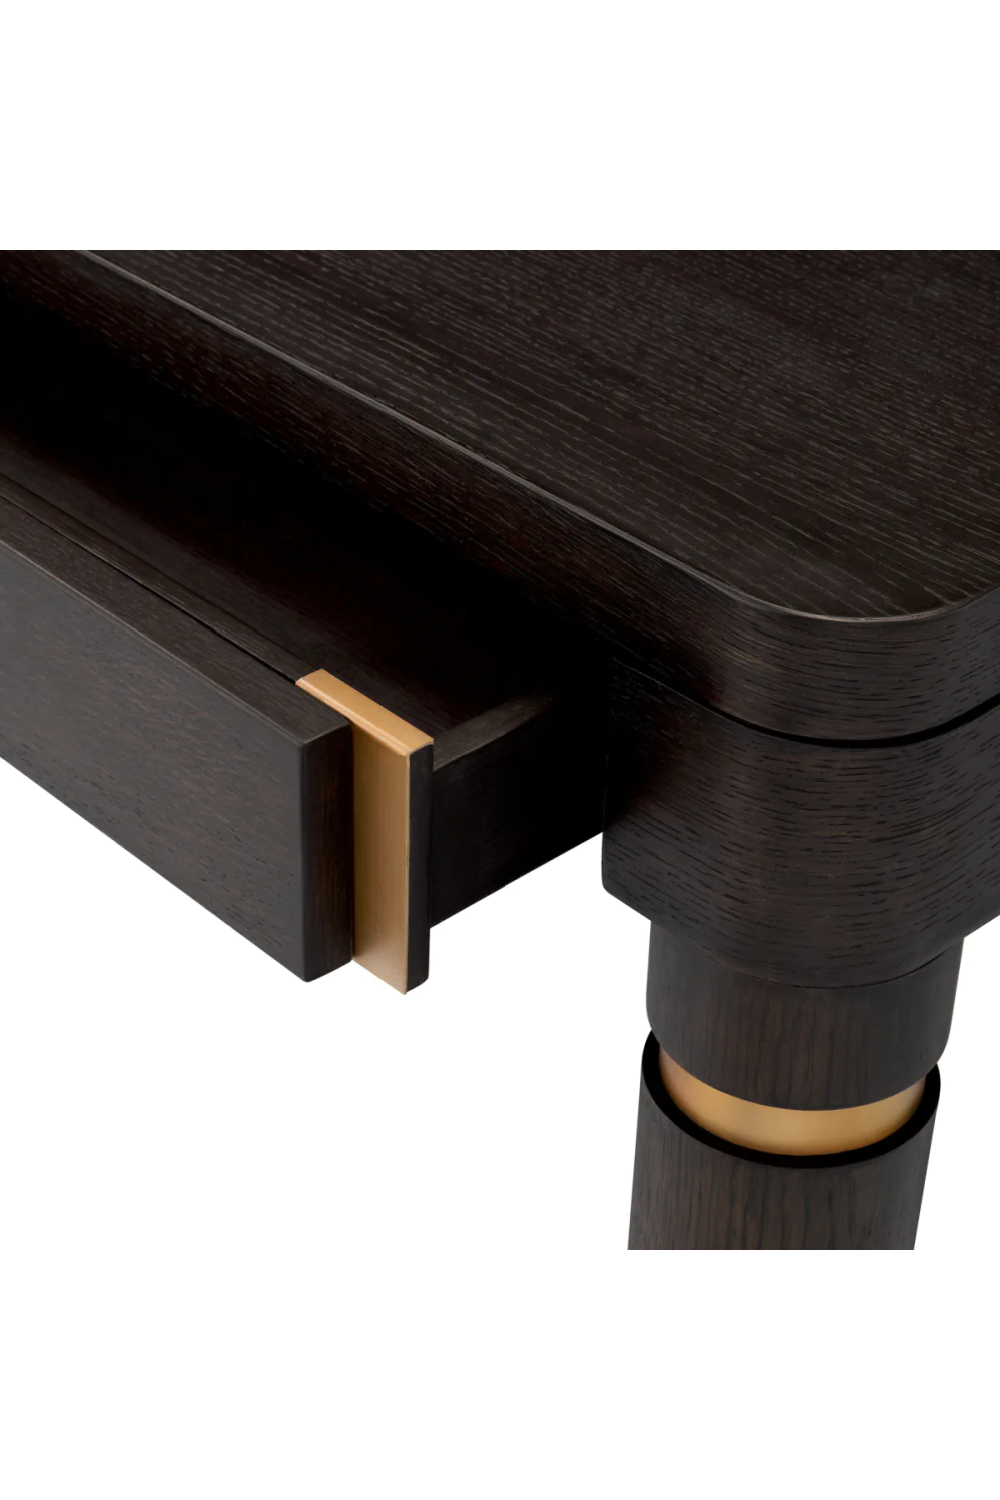 Modern Wood Desk | Eichholtz Carmel | Oroa.com